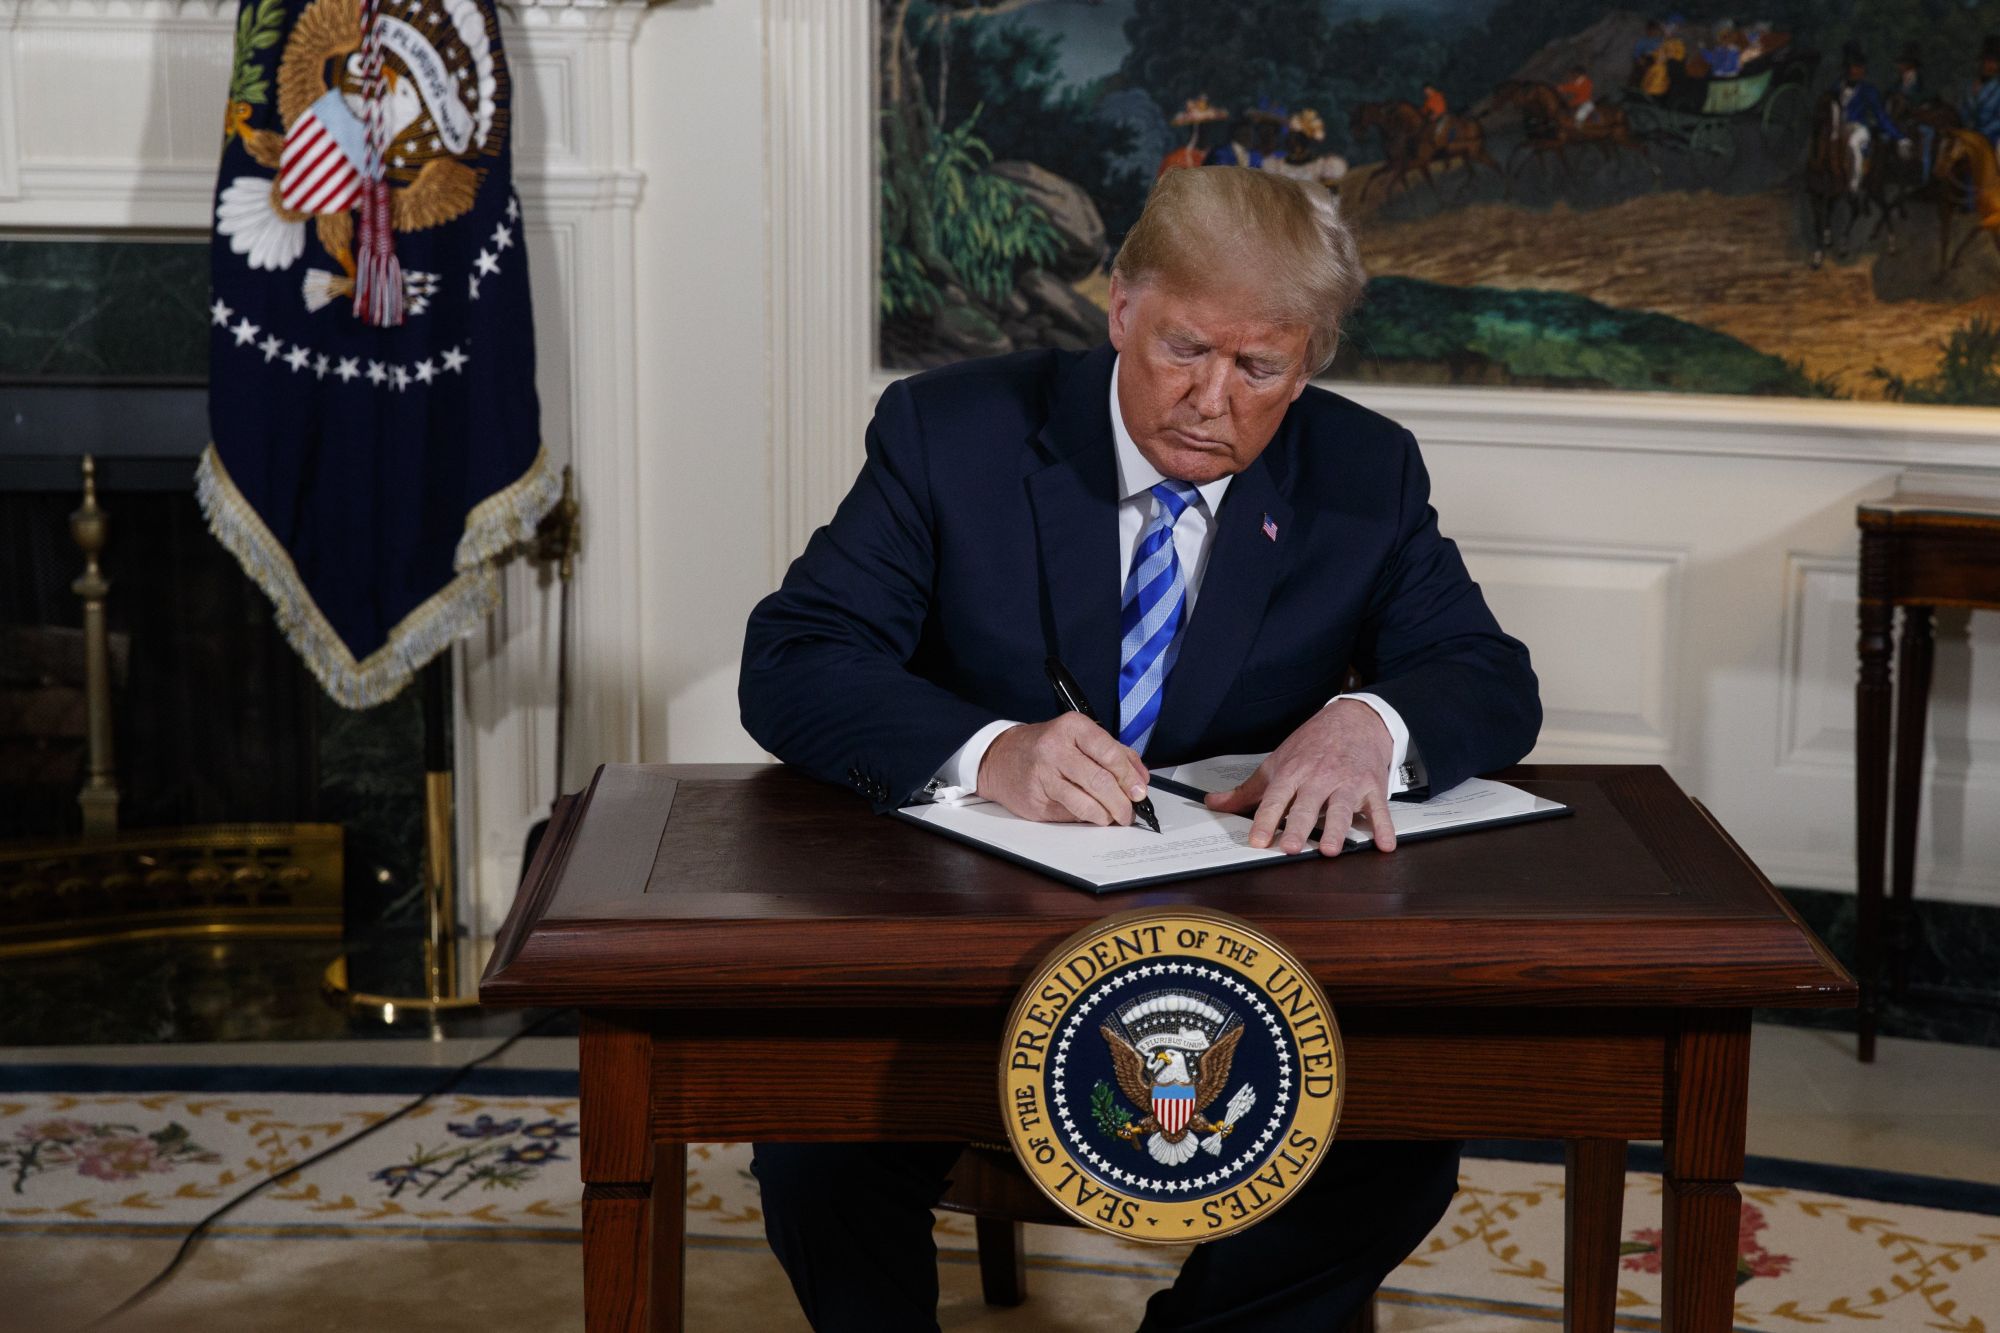 Donald Trump amerikai elnök rendeletet ír alá Irán elleni szankciók visszaállításáról a washingtoni Fehér Házban 2018. május 8-án, miután bejelentette, hogy az Egyesült Államok kilép az iráni atomprogramról 2015-ben aláírt többhatalmi szerződésből. (MTI/AP/Evan Vucci)